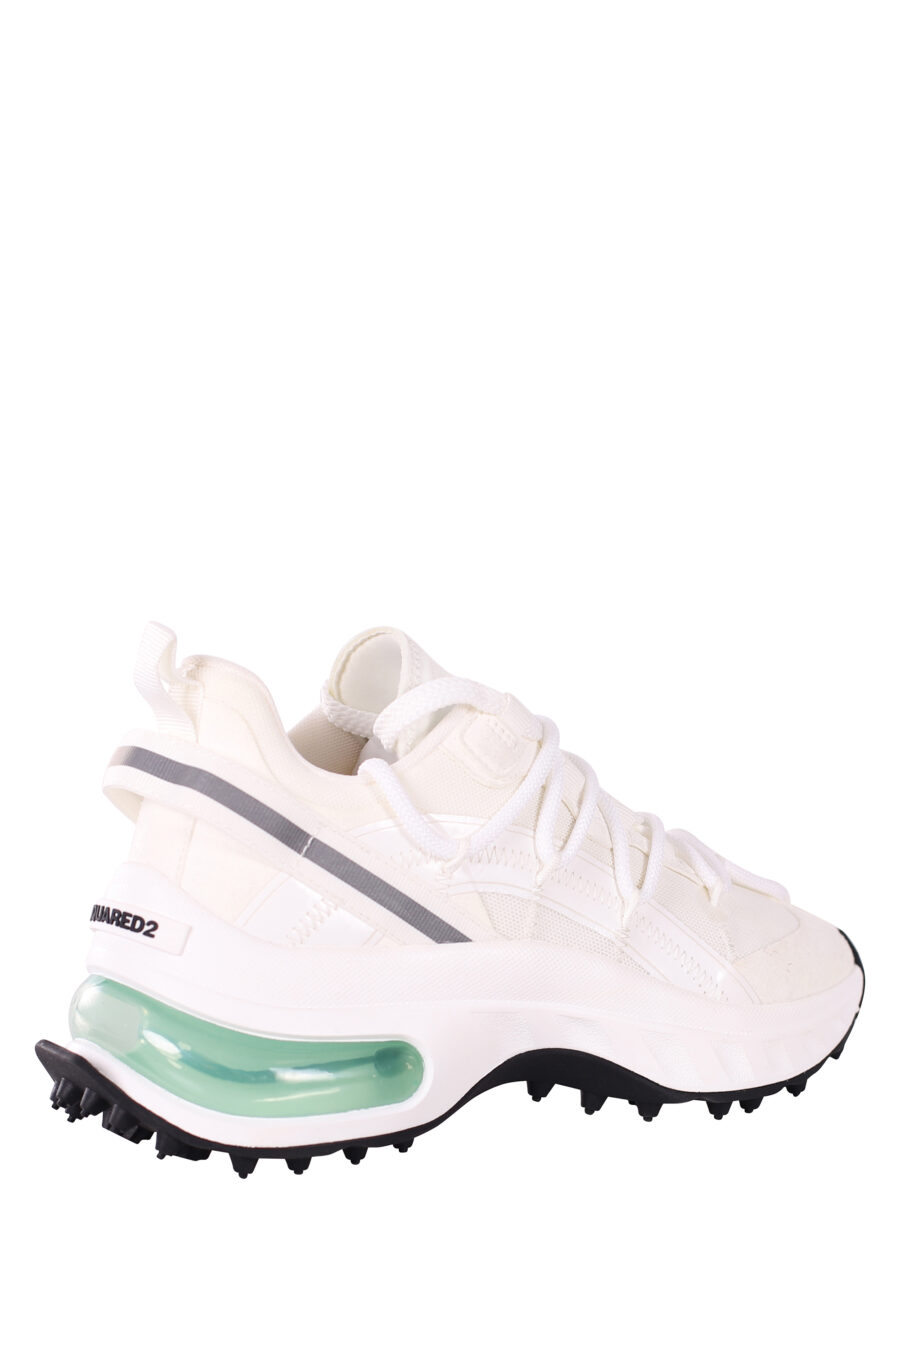 Zapatillas blancas con camara de aire verde - IMG 5837